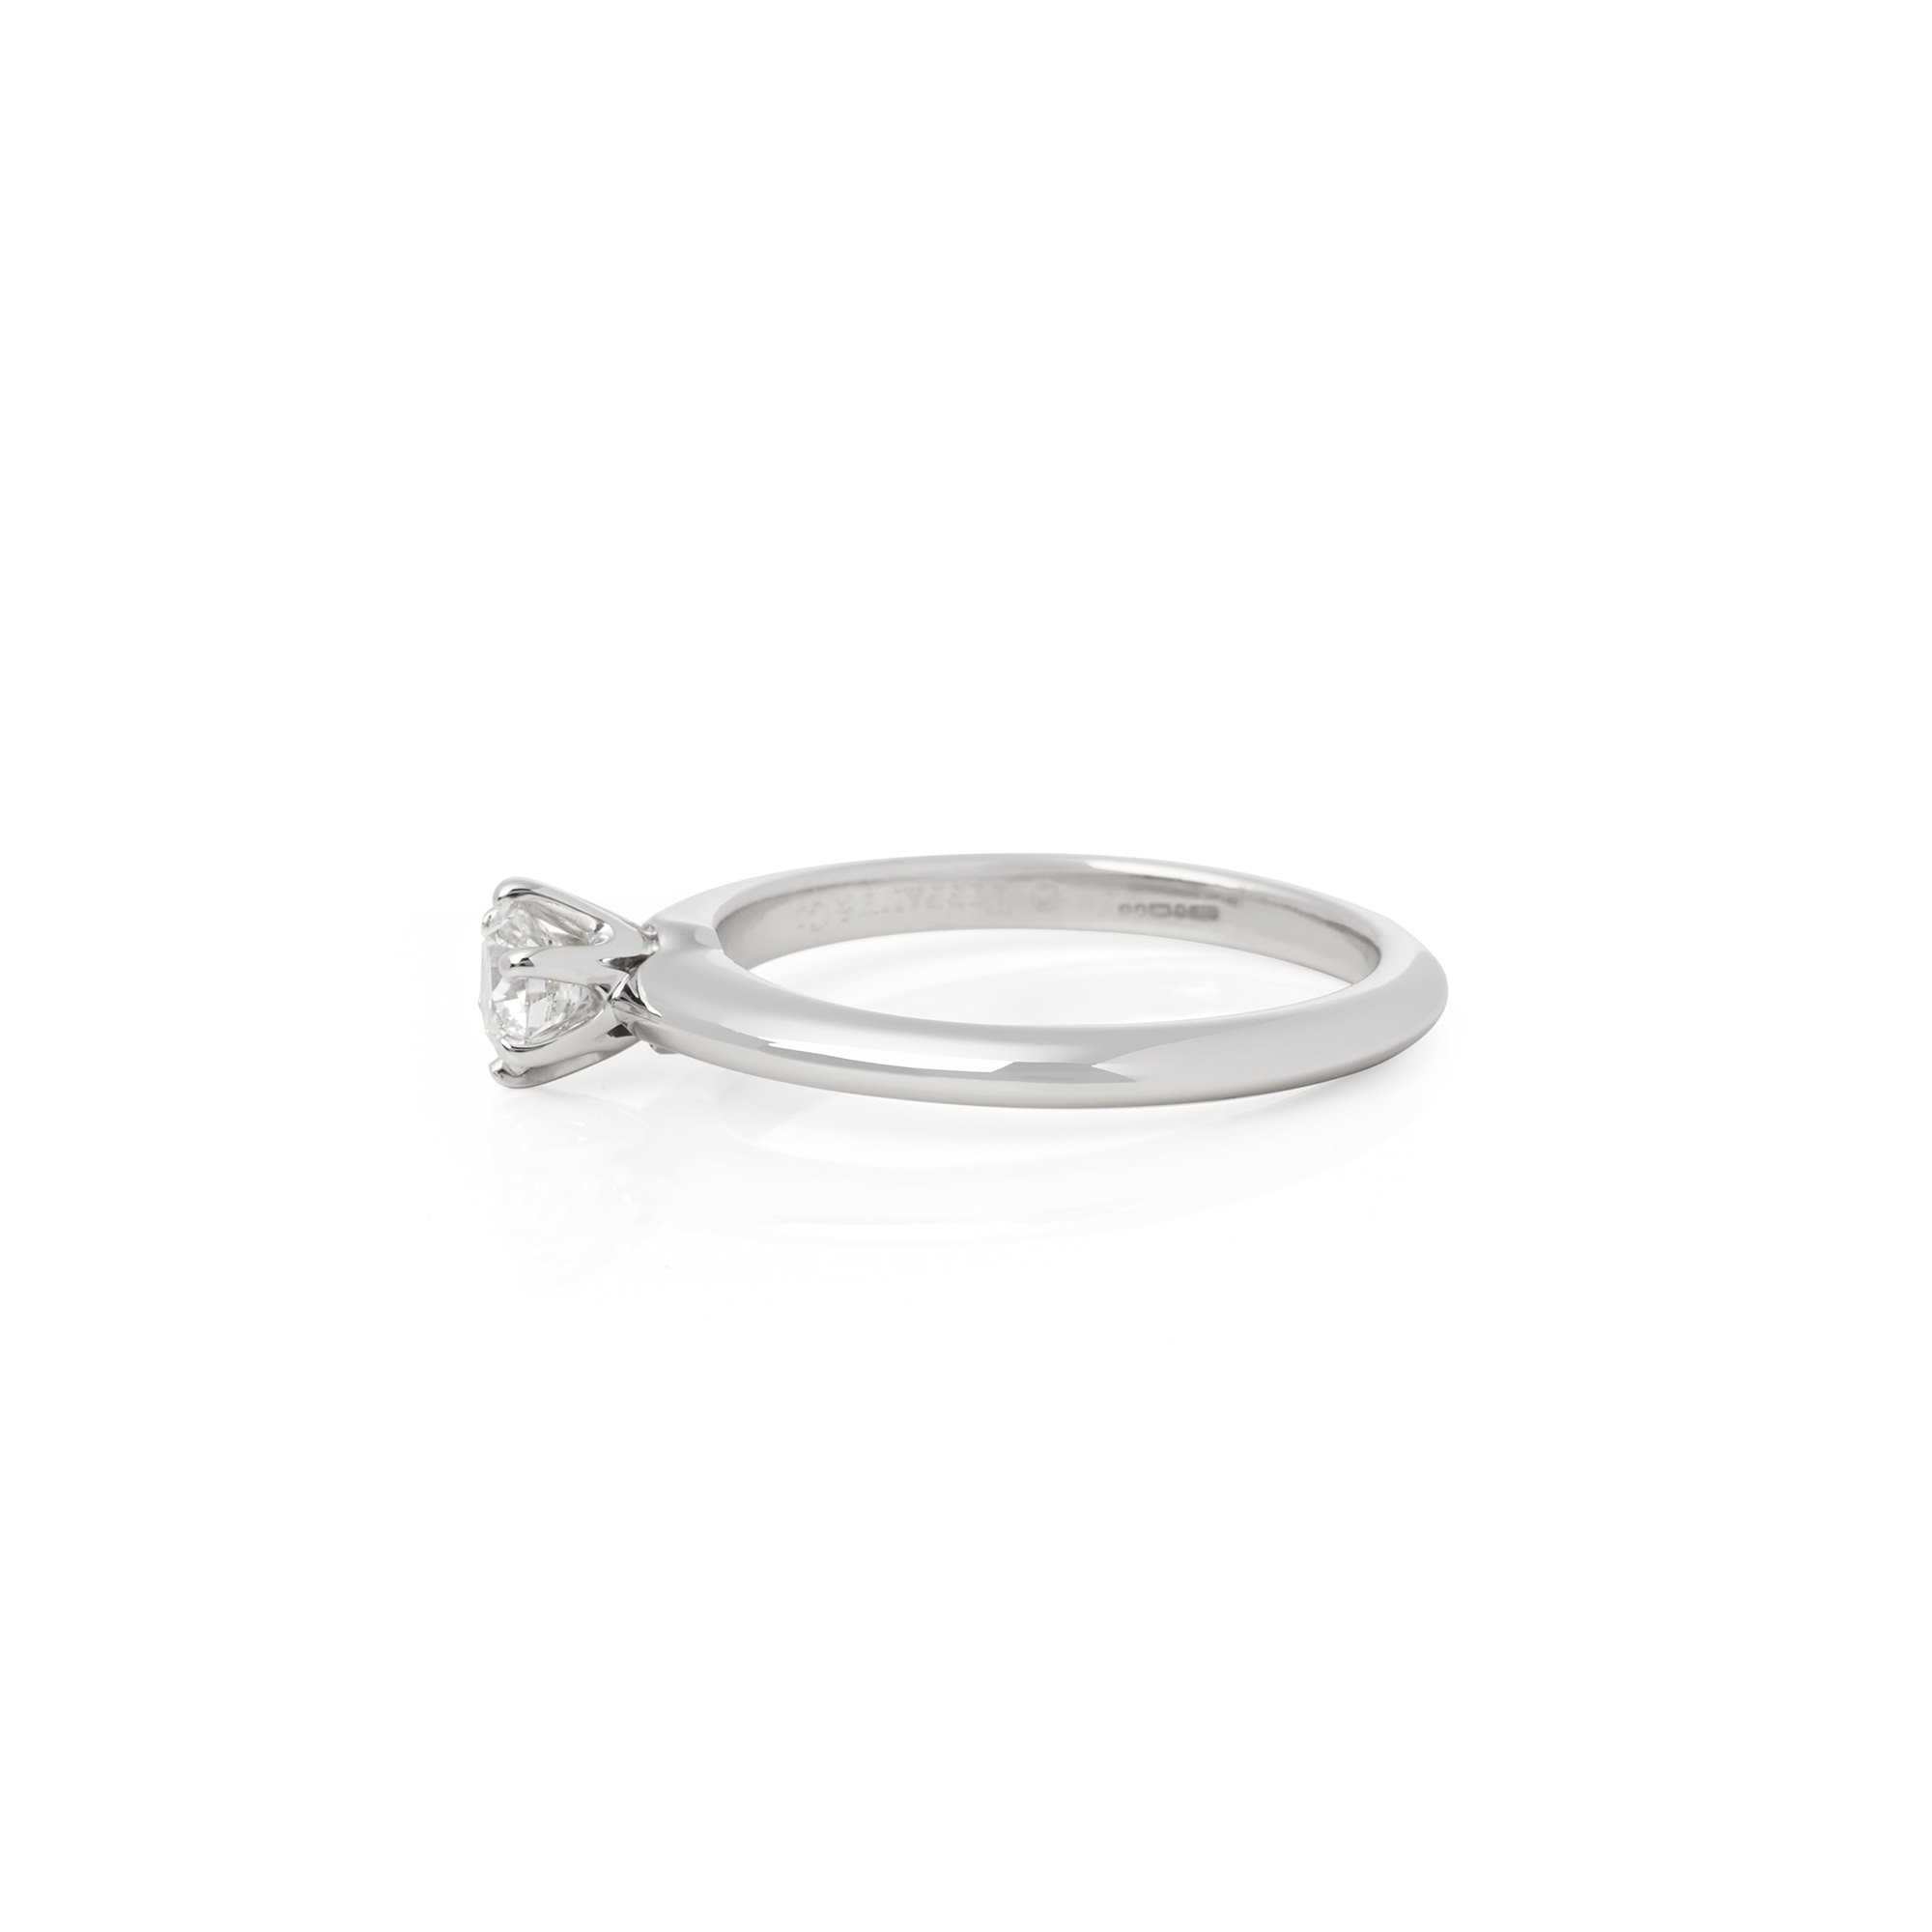 Tiffany & Co. Platinum 0.30ct Round Brilliant Cut Diamond Solitaire Ring